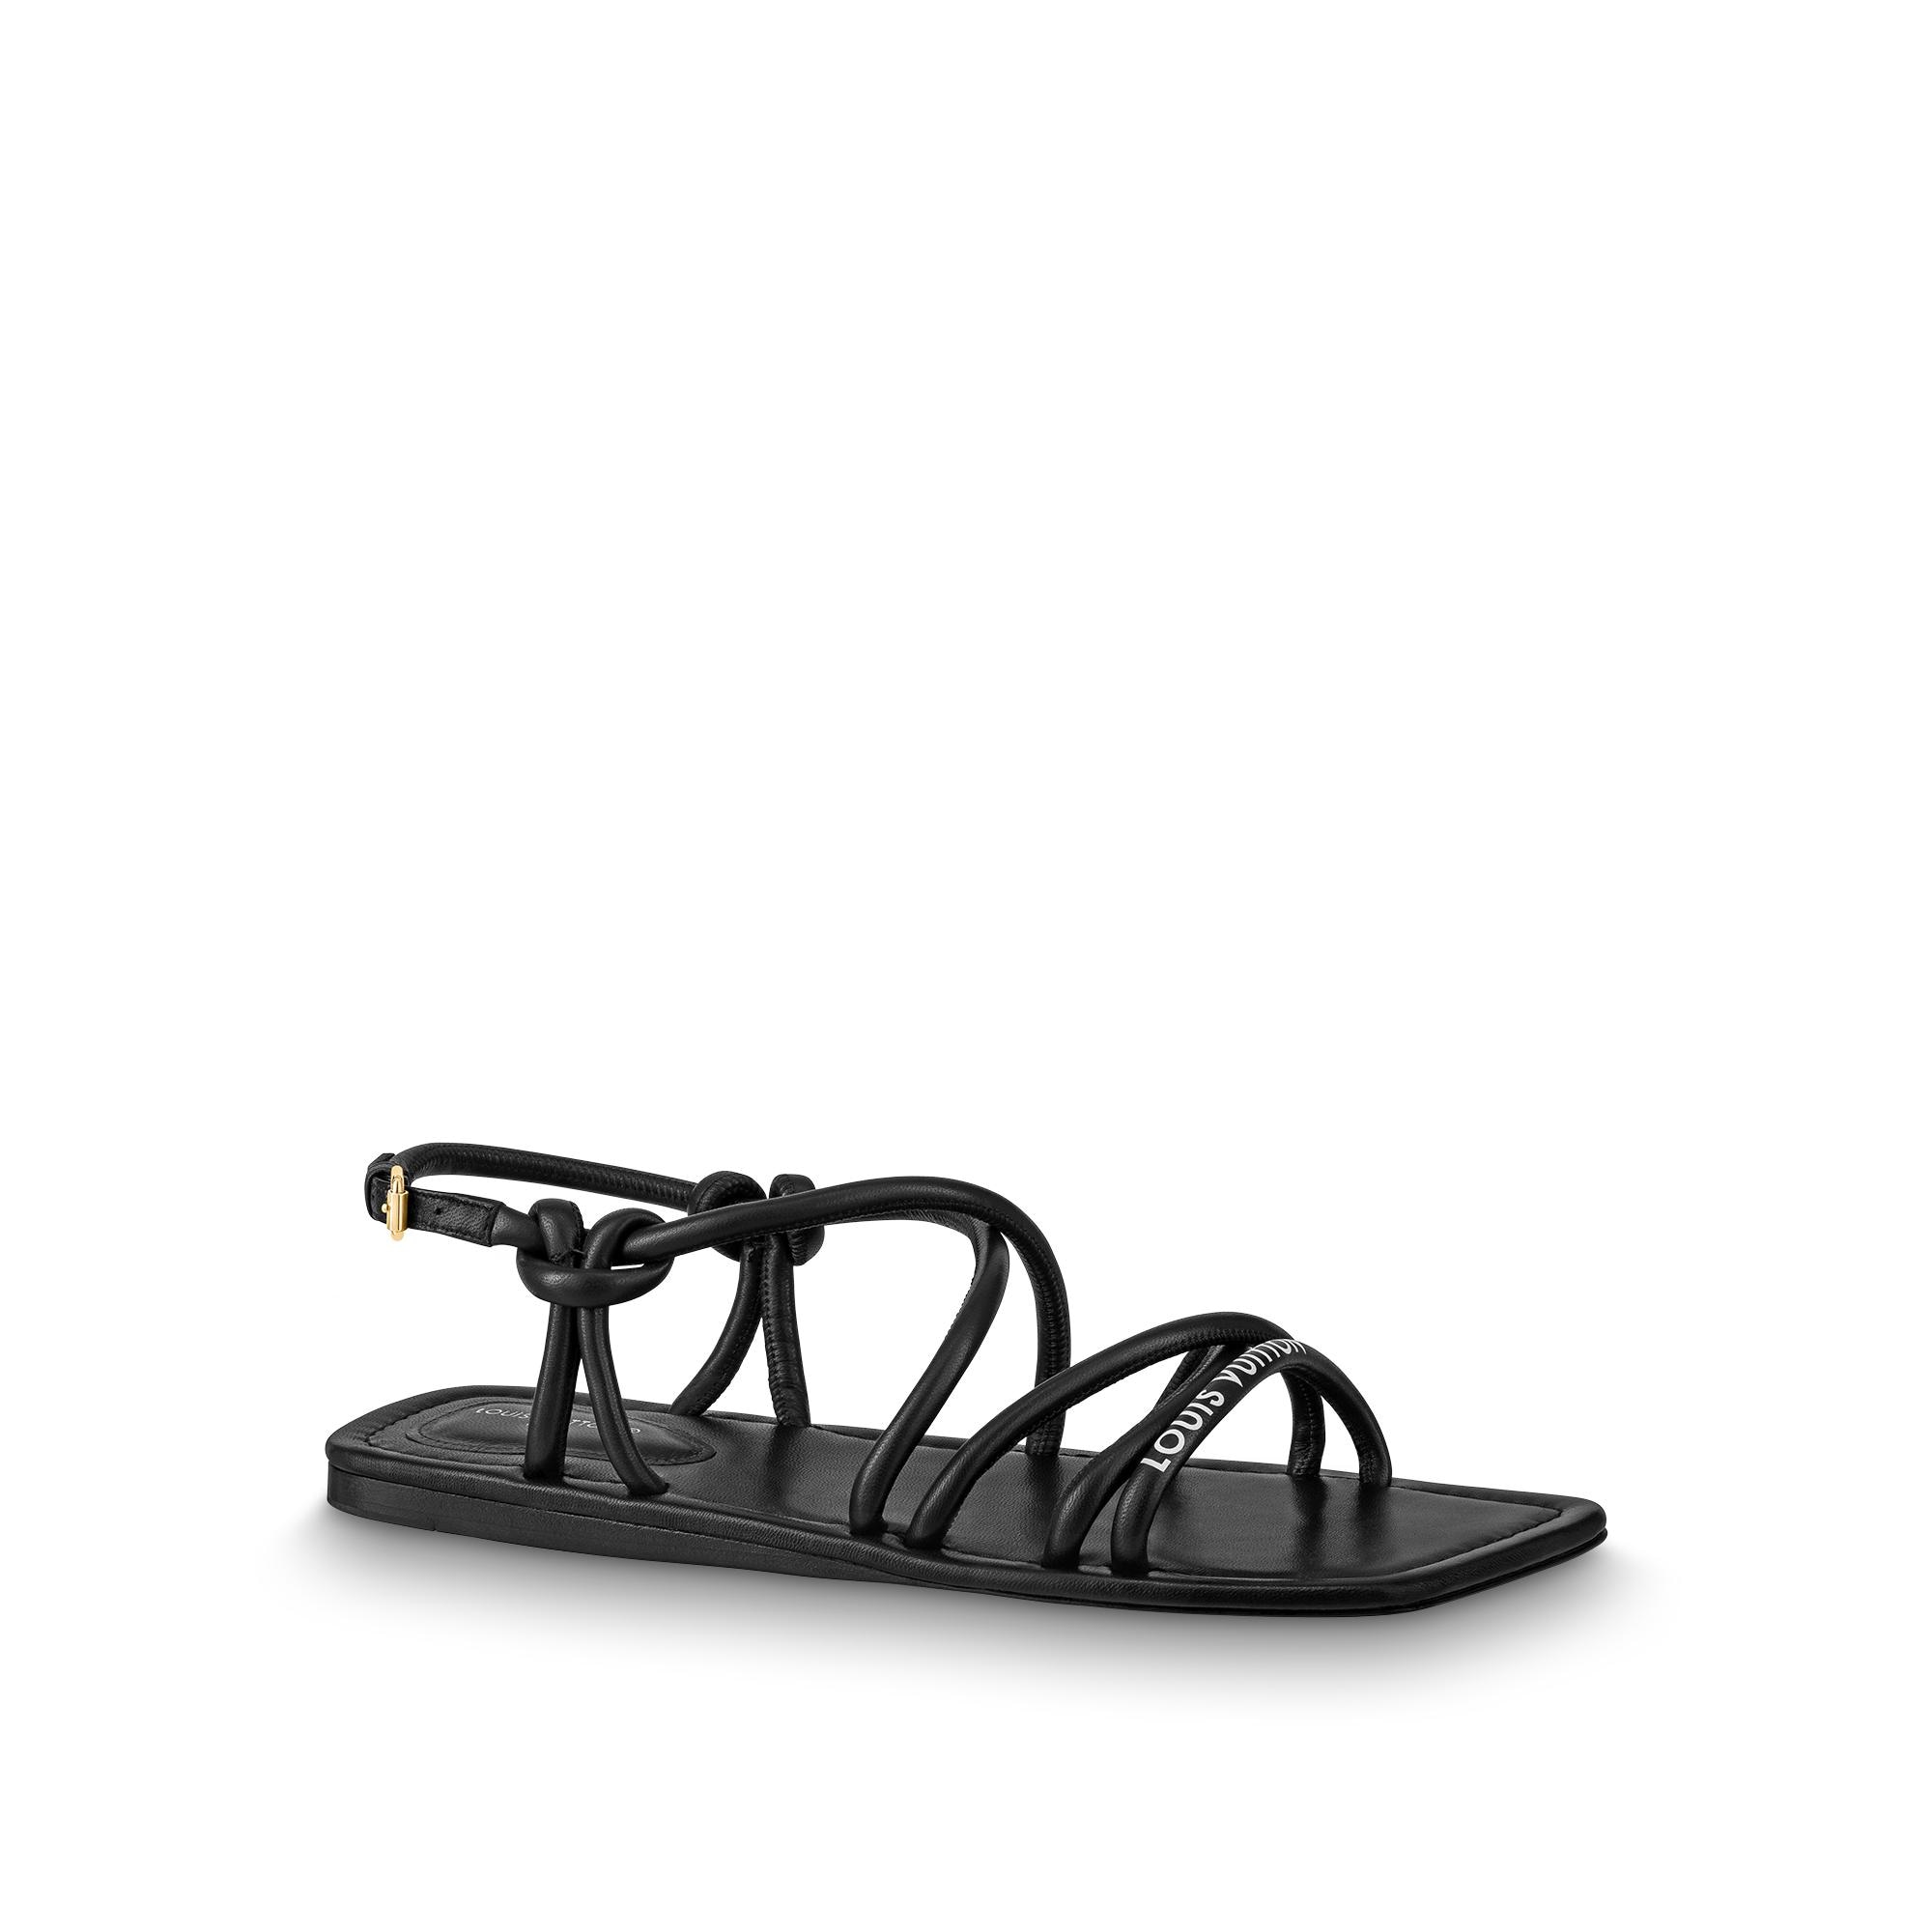 Louis Vuitton - Sandals - NOVA for WOMEN online on Kate&You - 1A9CXS  K&Y11271